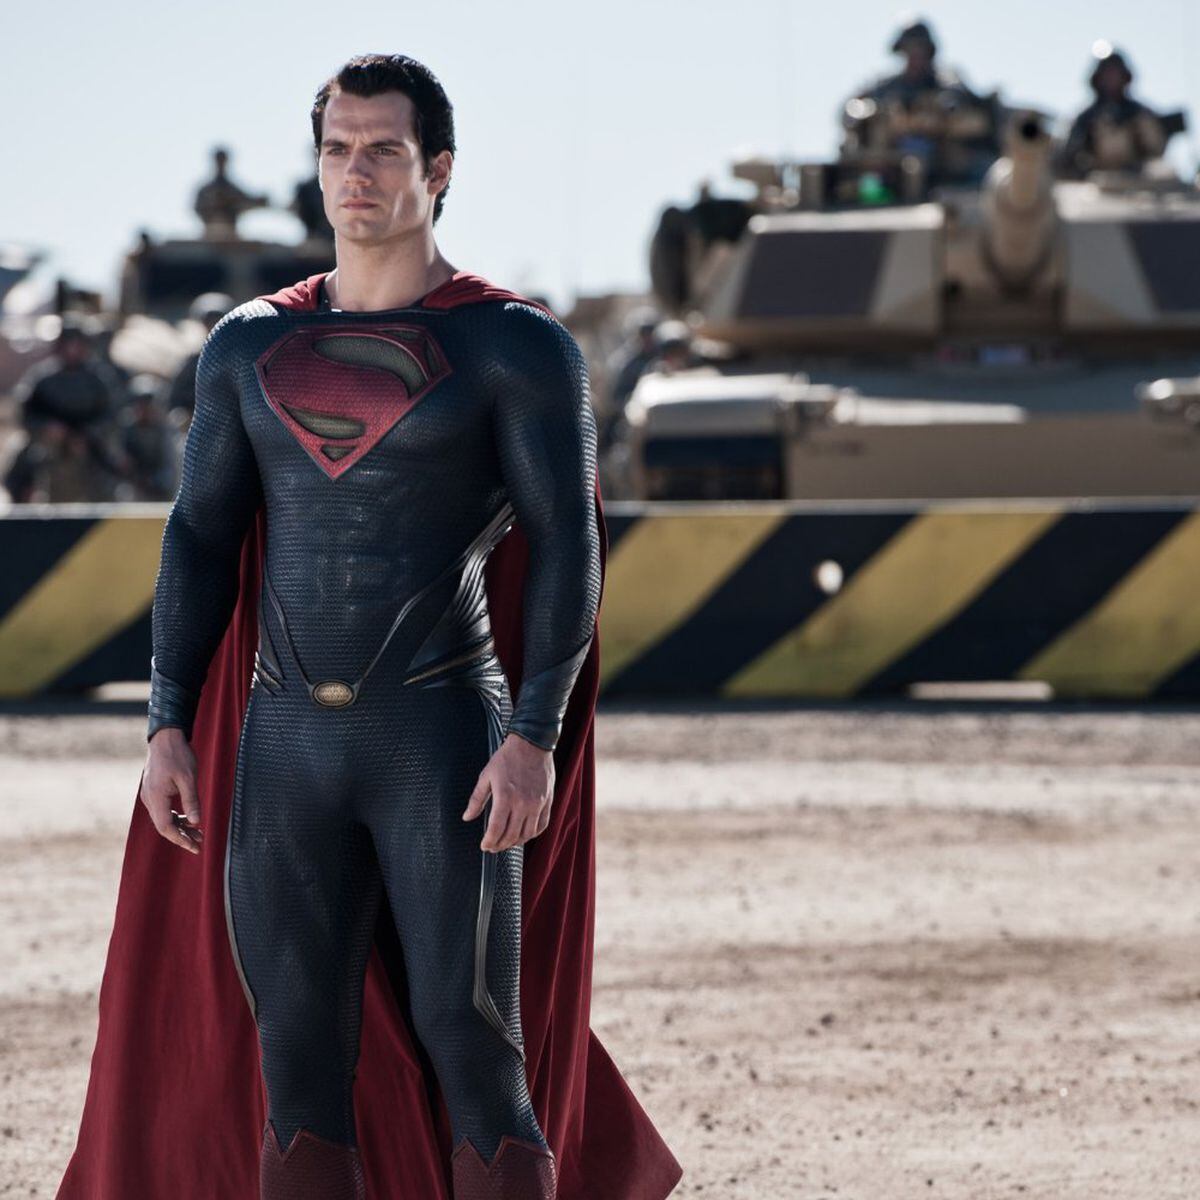 Henry Cavill anuncia que não será Superman nos próximos filmes da